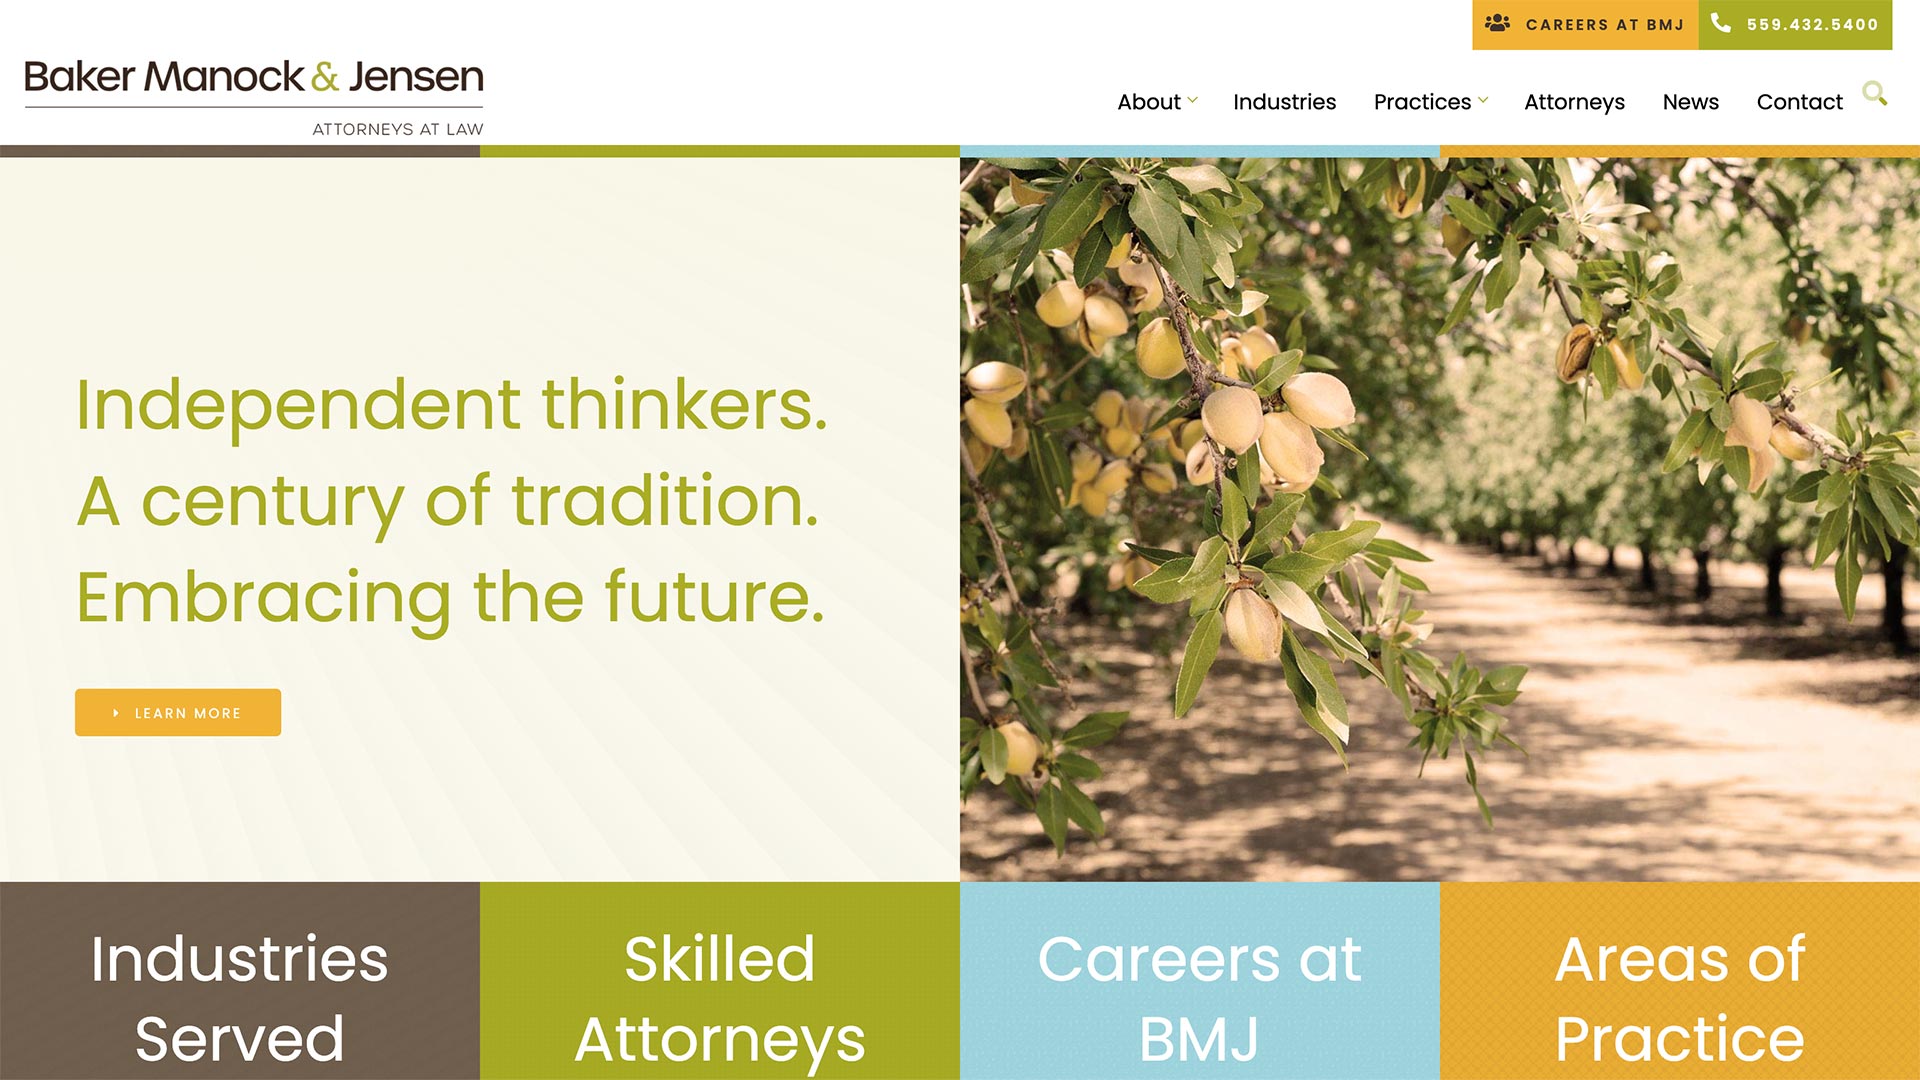 Law Firm Website Design Example: Baker Manock & Jensen